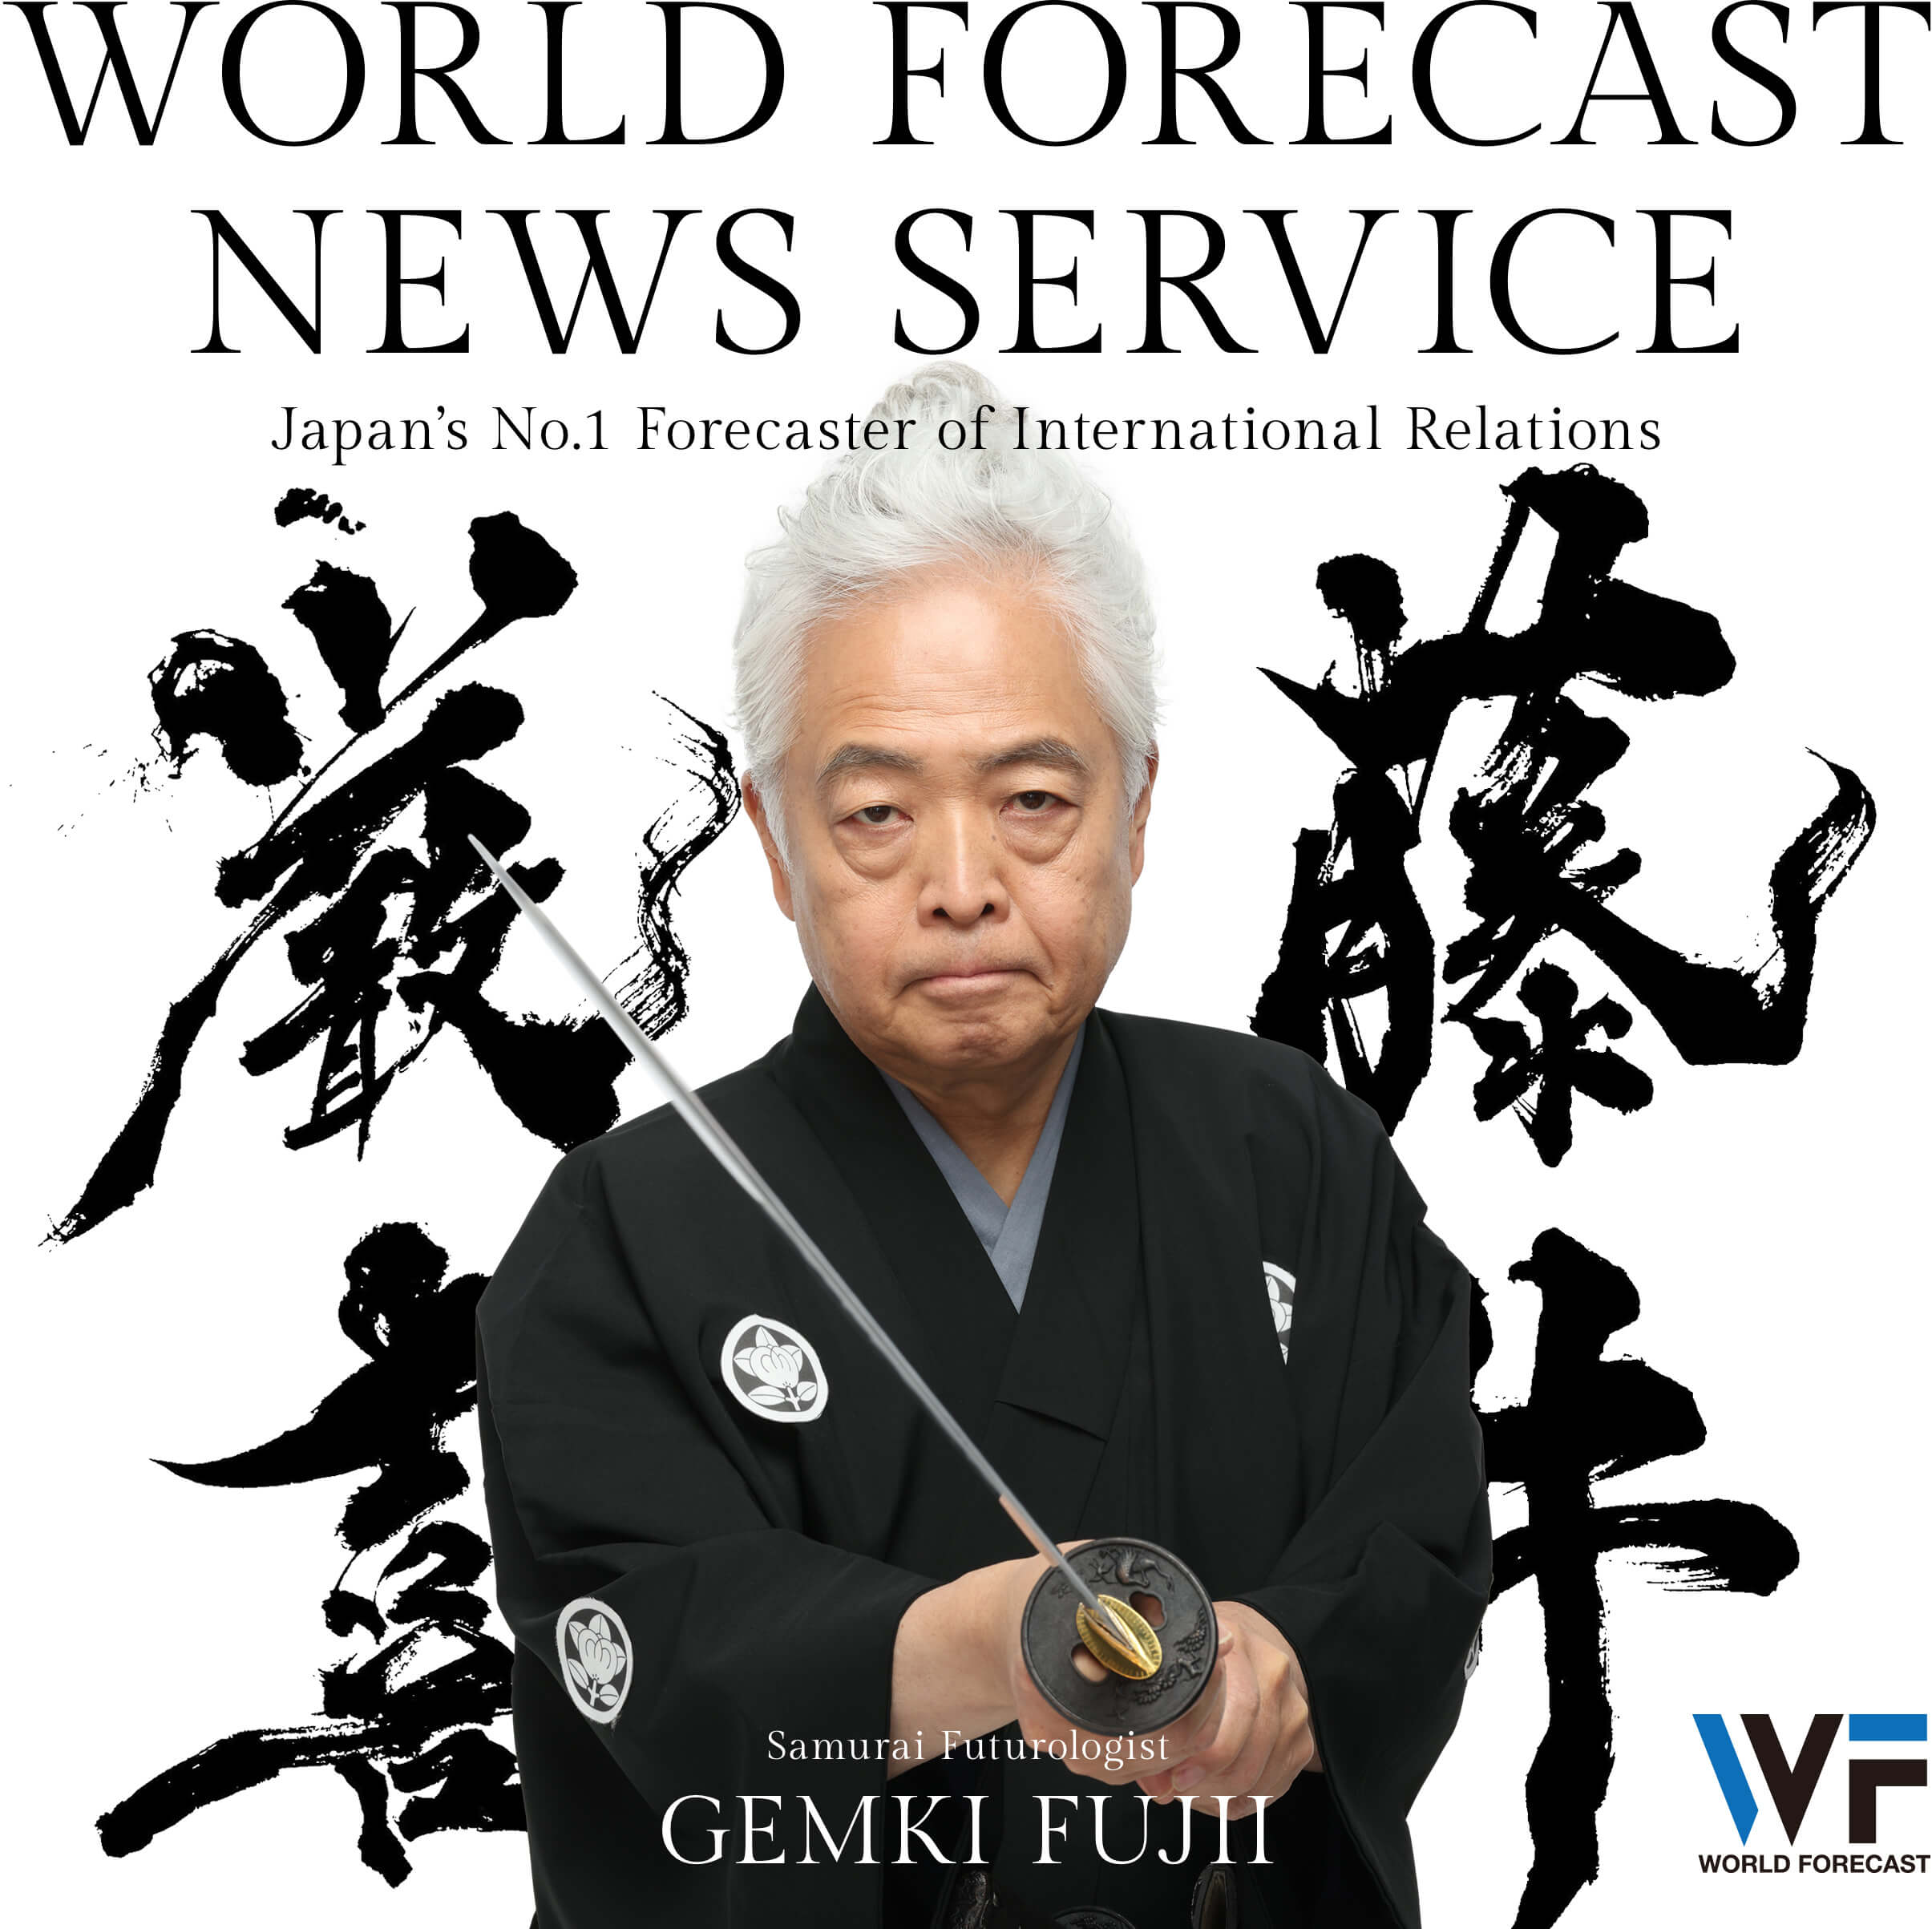 WORLD FORECAST NEWS SERVICE by Gemki Fujii